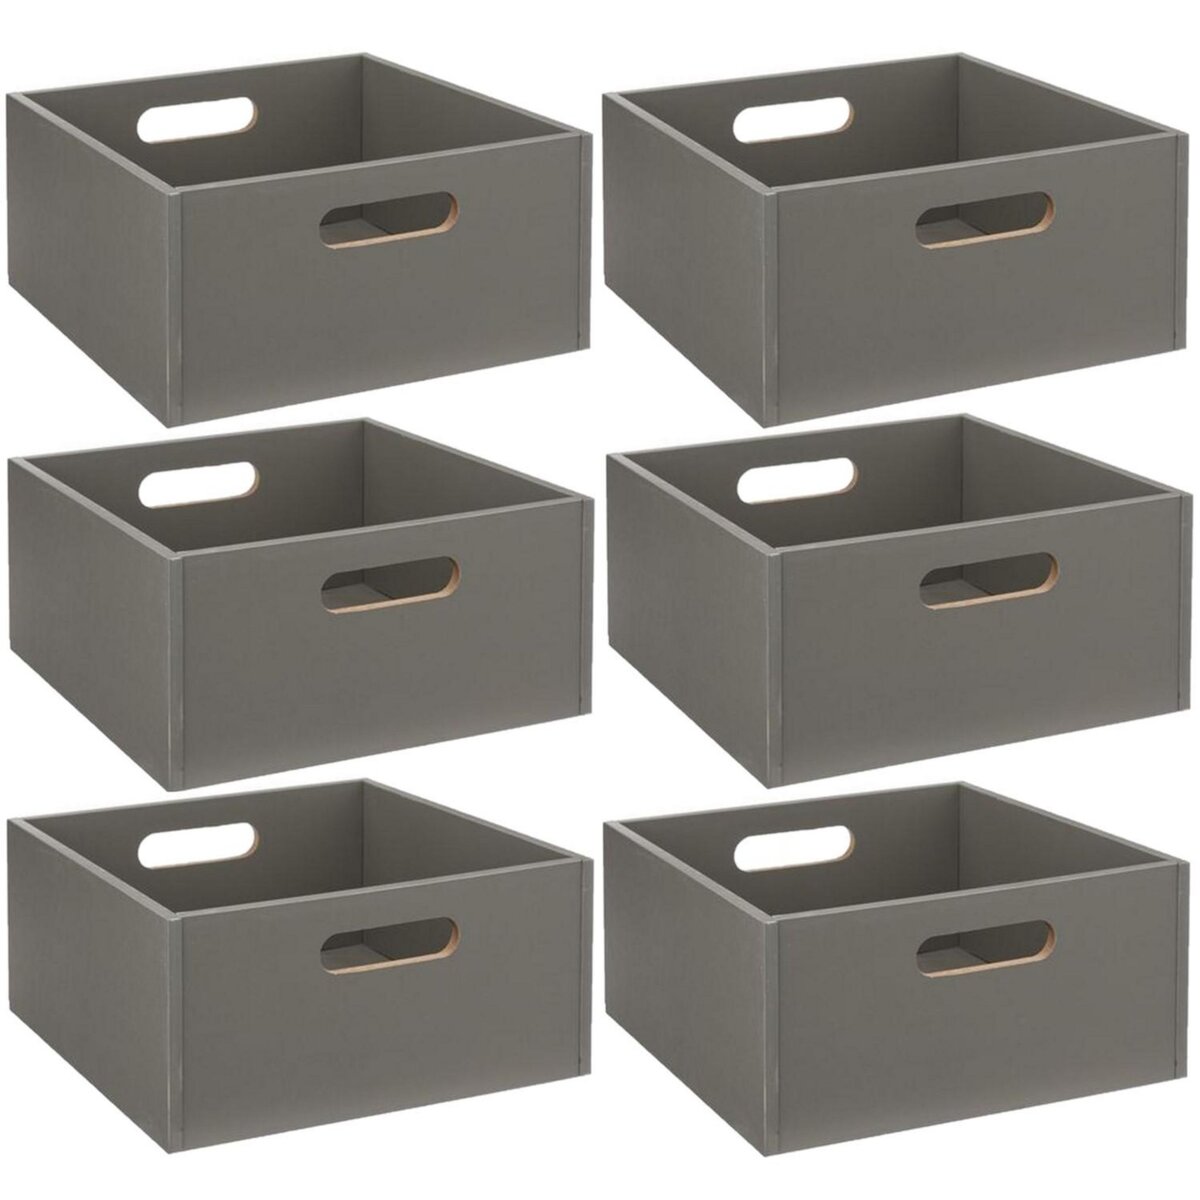 TOILINUX Lot de 6 Boîtes de rangement carrée en MDF - L. 31 x H. 15 cm - Vert de gris